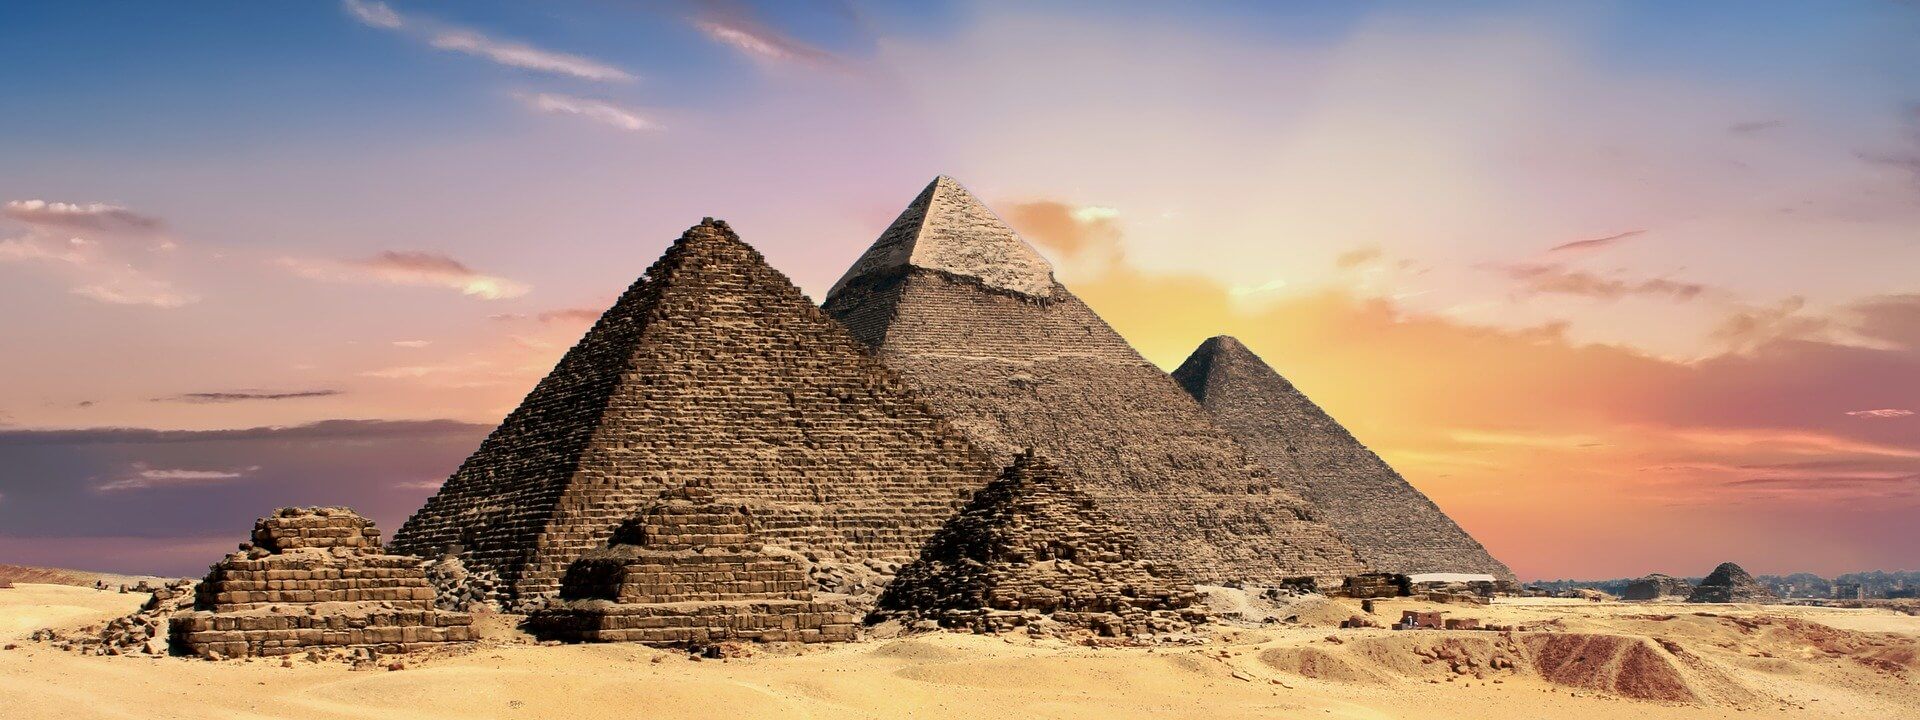 pyramids-2371501_1920